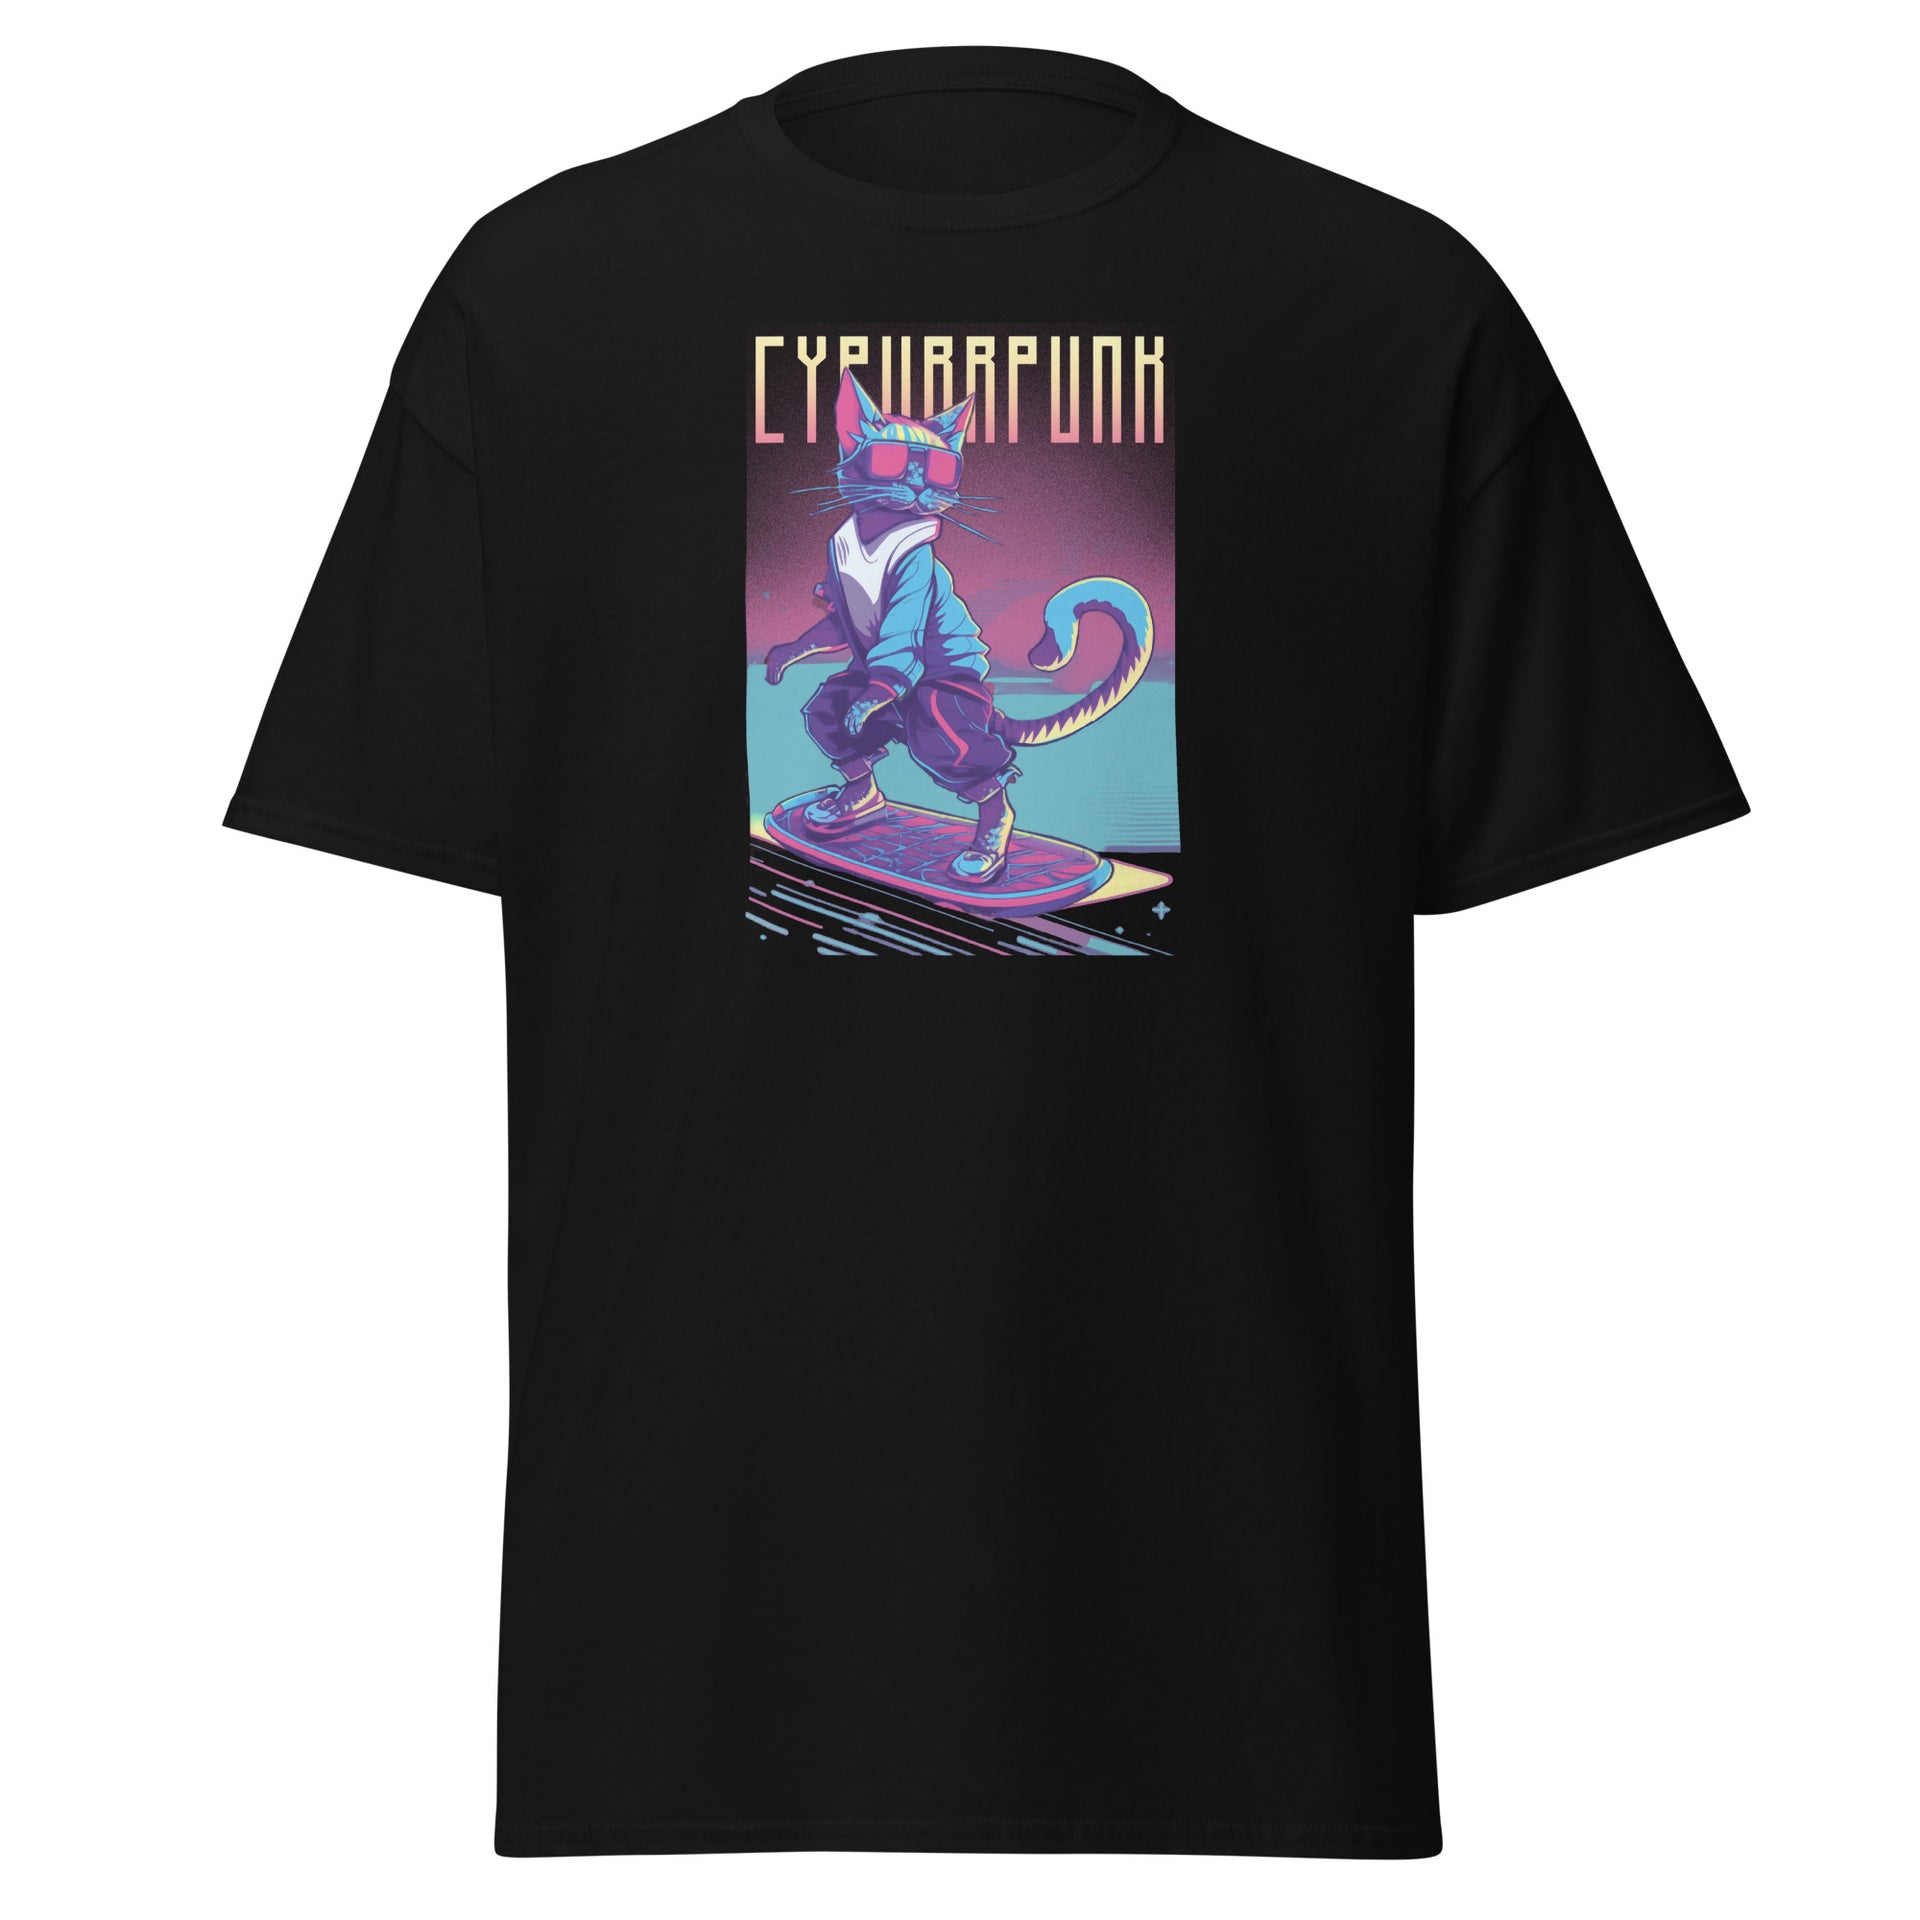 Cypurrpunk Men's T-Shirt